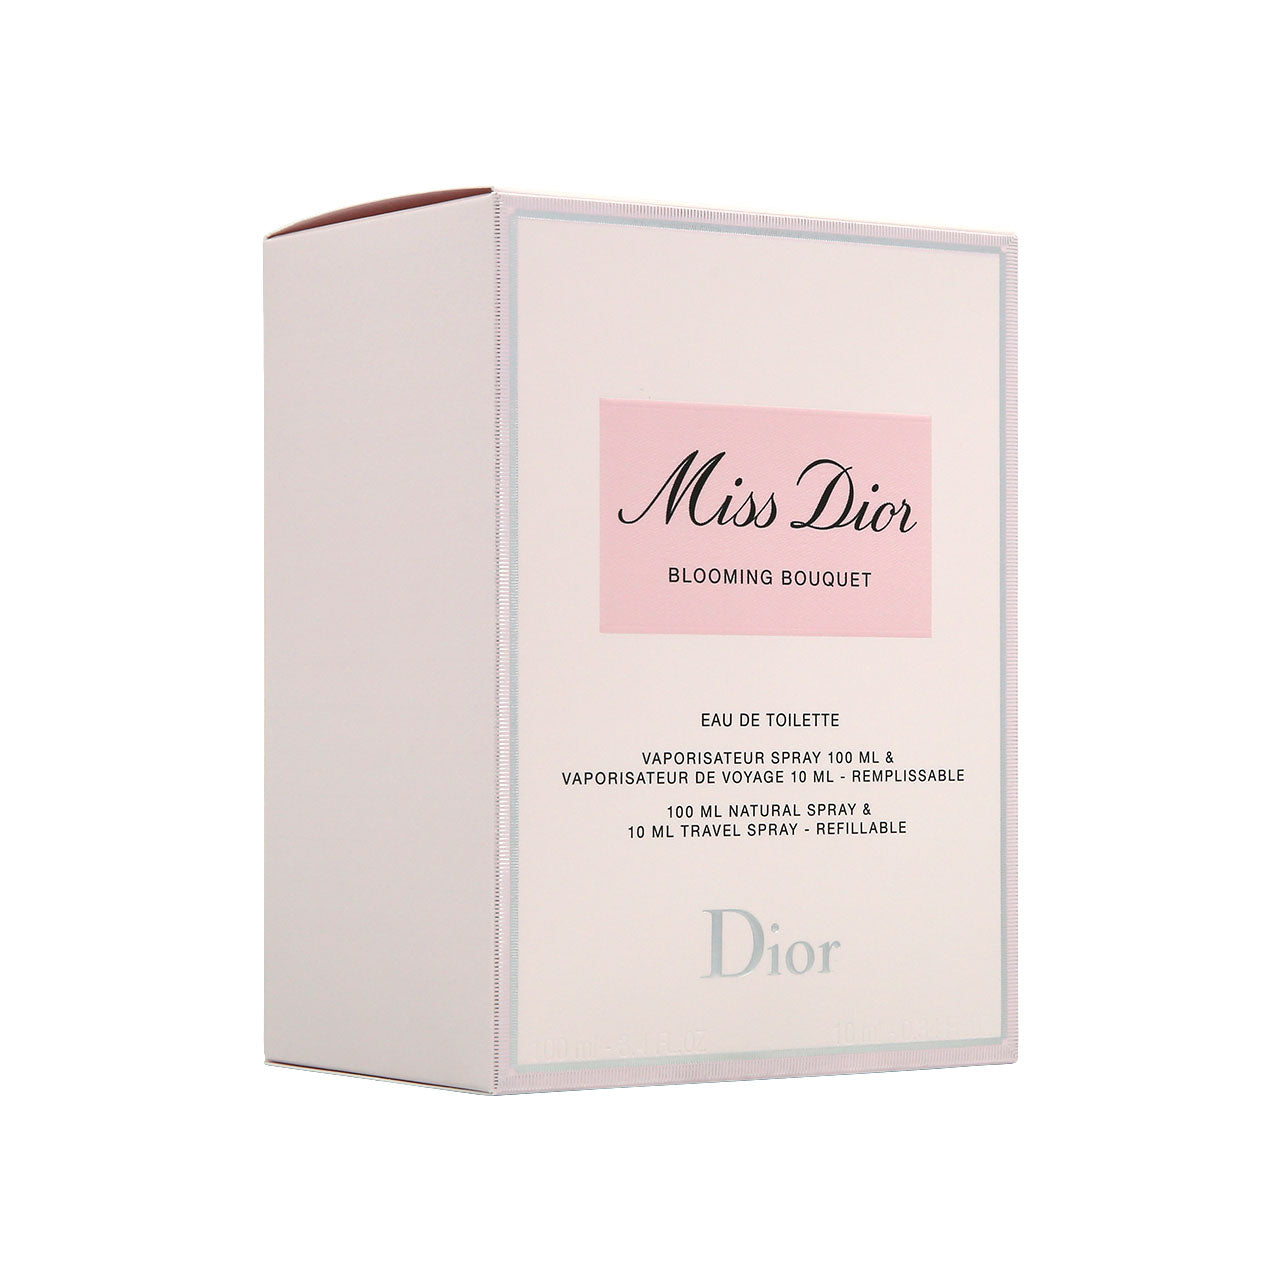 Christian Dior Miss Dior Blooming Bouquet Eau de Toilette Set 2pcs